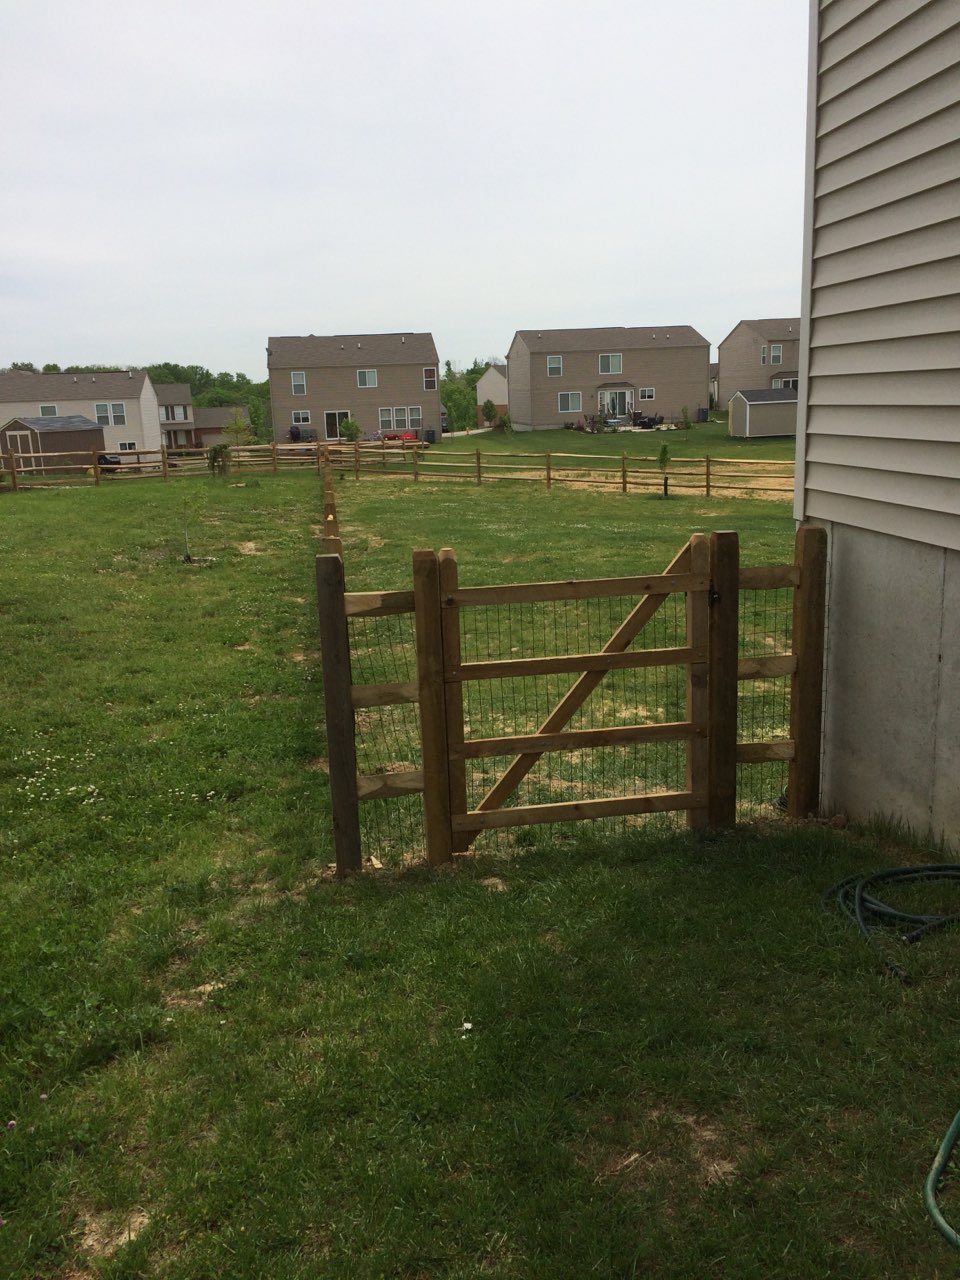 fence image